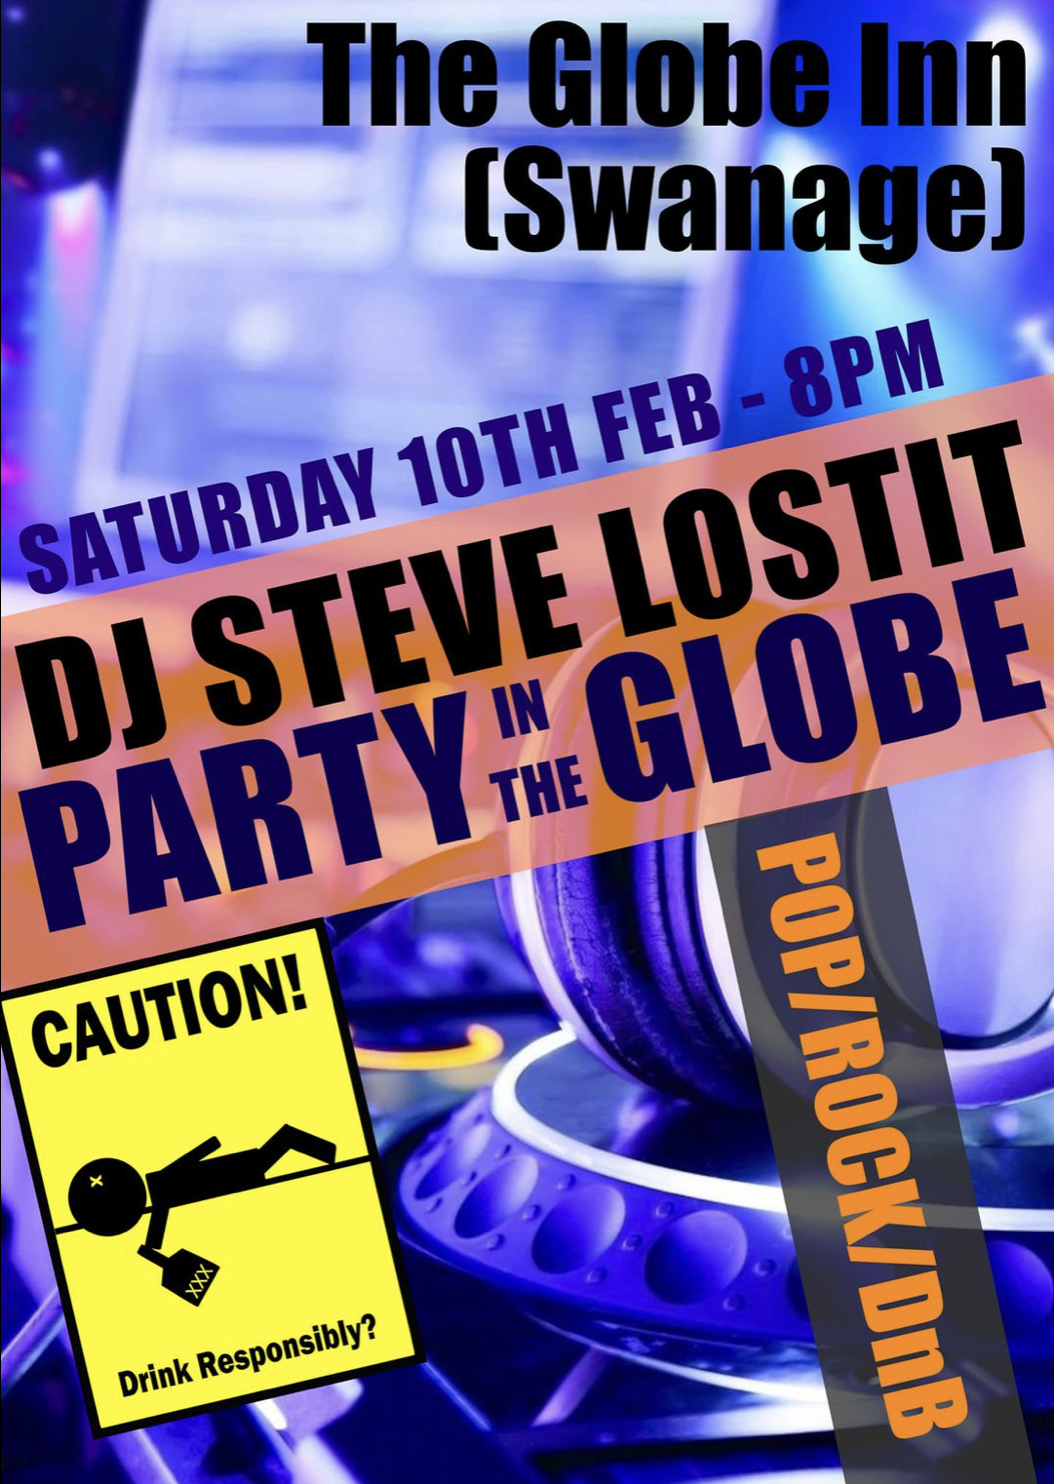 DJ Lostit at The Globe Inn poster